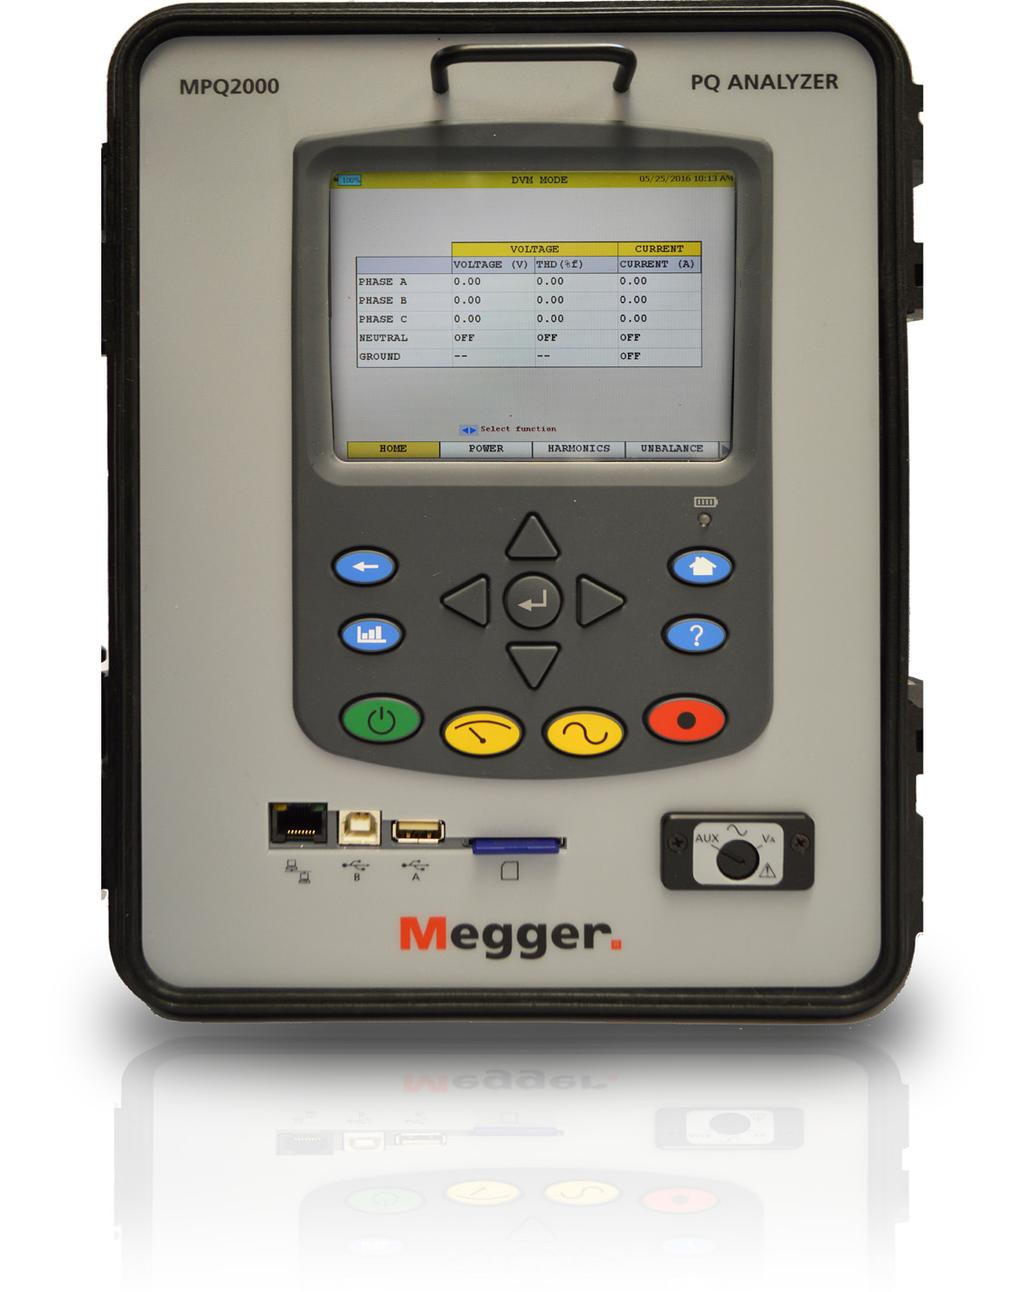 MPQ2000 El Aalizador portátil de calidad de la eergía MPQ2000 de Megger, co su más reciete software y fucioes mejoradas, respode a las ormas iteracioales de calidad y sumiistro de eergía IEC61000,